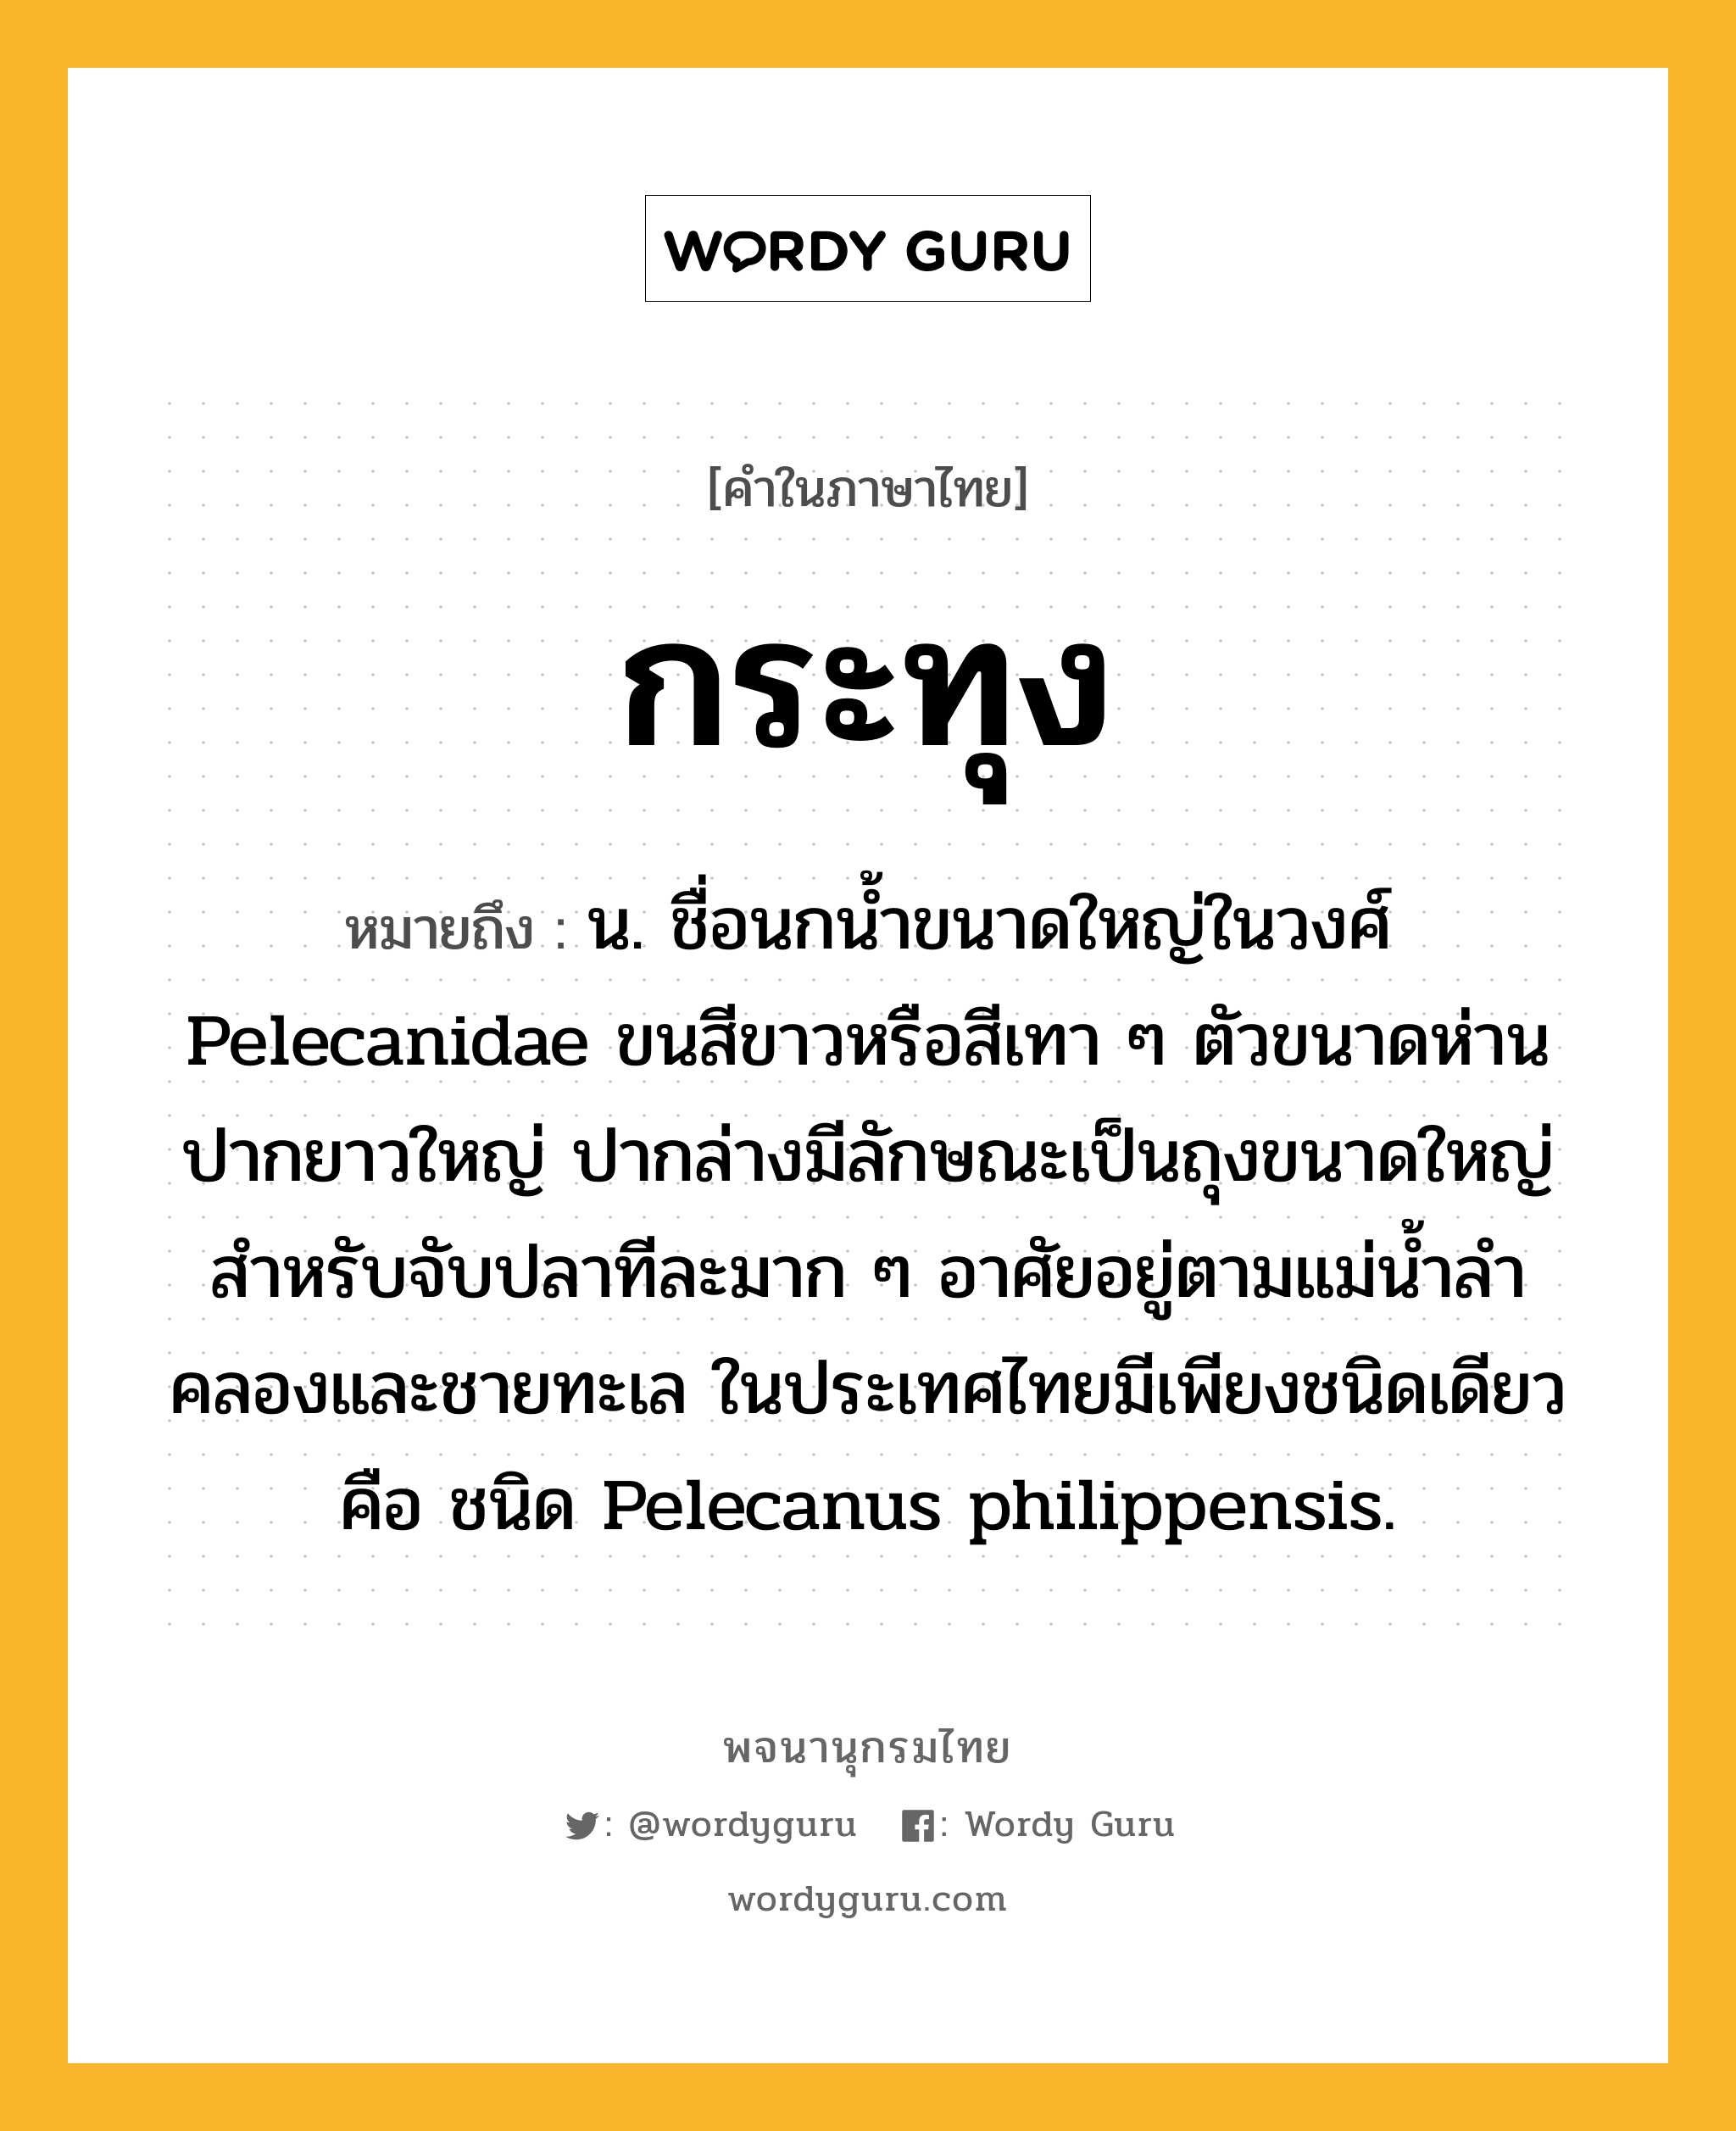 กระทุง ความหมาย หมายถึงอะไร?, คำในภาษาไทย กระทุง หมายถึง น. ชื่อนกนํ้าขนาดใหญ่ในวงศ์ Pelecanidae ขนสีขาวหรือสีเทา ๆ ตัวขนาดห่าน ปากยาวใหญ่ ปากล่างมีลักษณะเป็นถุงขนาดใหญ่สําหรับจับปลาทีละมาก ๆ อาศัยอยู่ตามแม่นํ้าลําคลองและชายทะเล ในประเทศไทยมีเพียงชนิดเดียวคือ ชนิด Pelecanus philippensis.